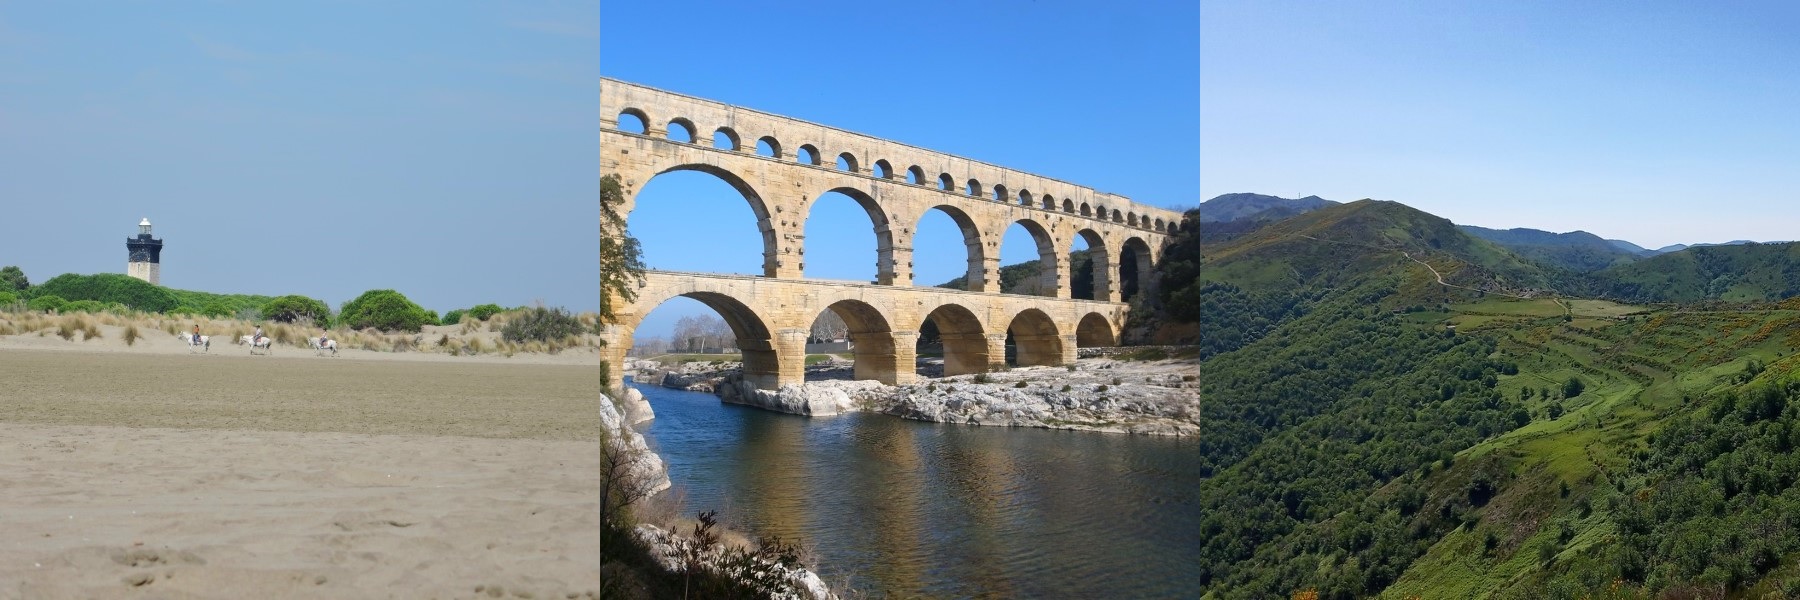 Plages et Camargue, Pont du Gard et Gardon, Cévennes et vallée cévenoles